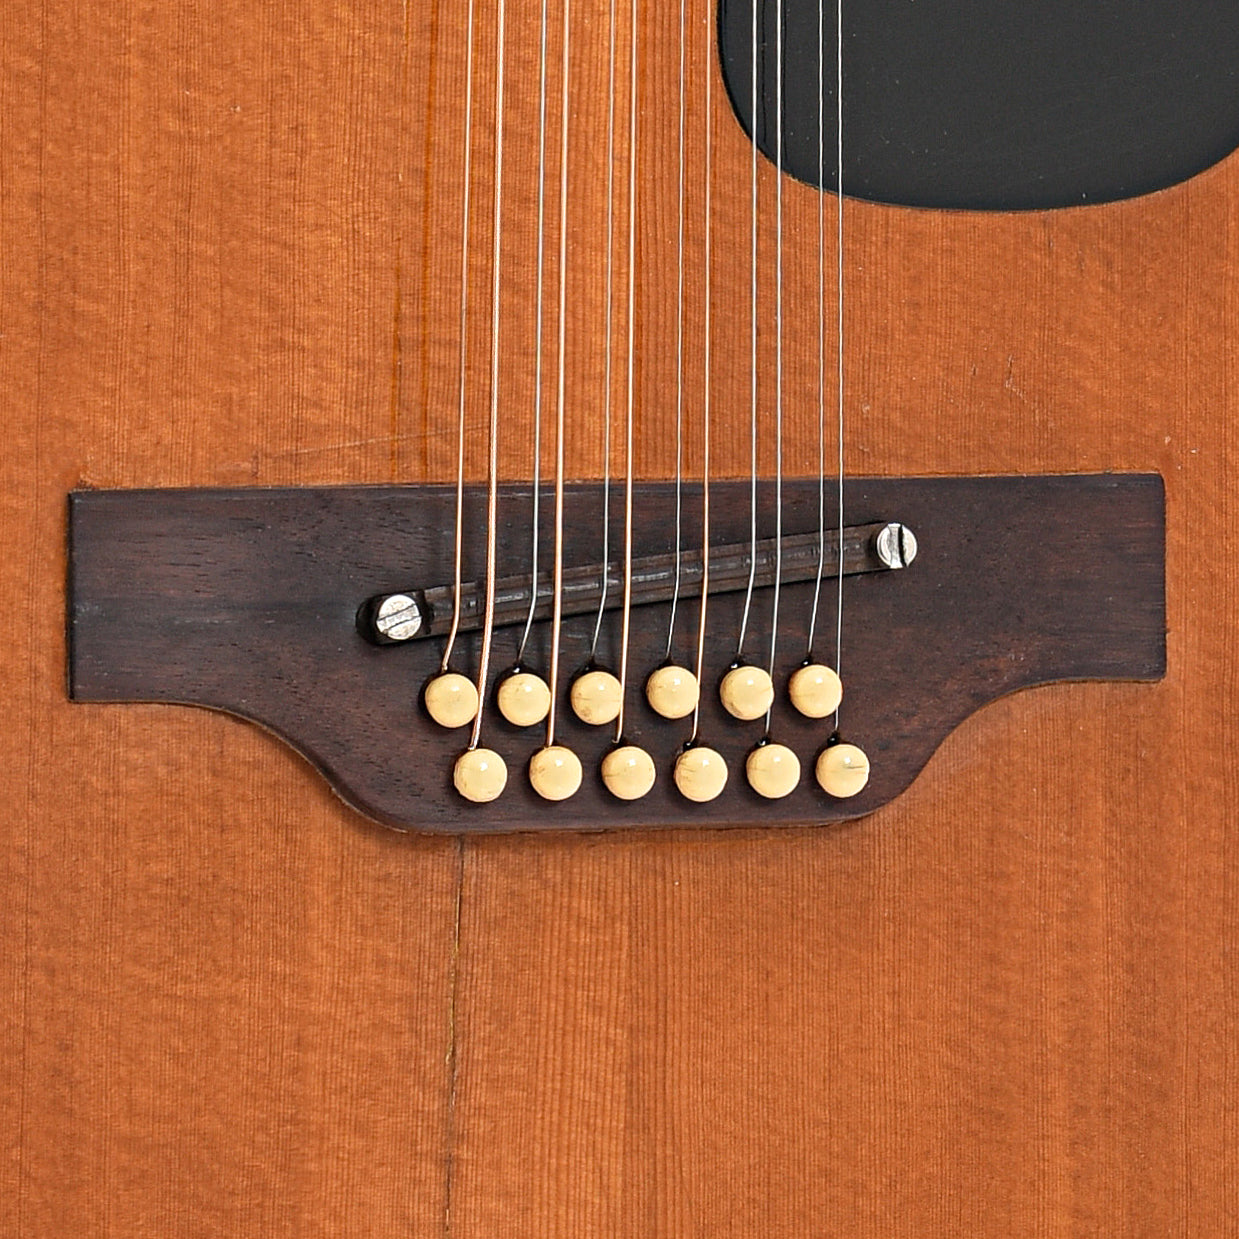 Bridge of Gibson B25-12N 12-String guitar (c.1970)